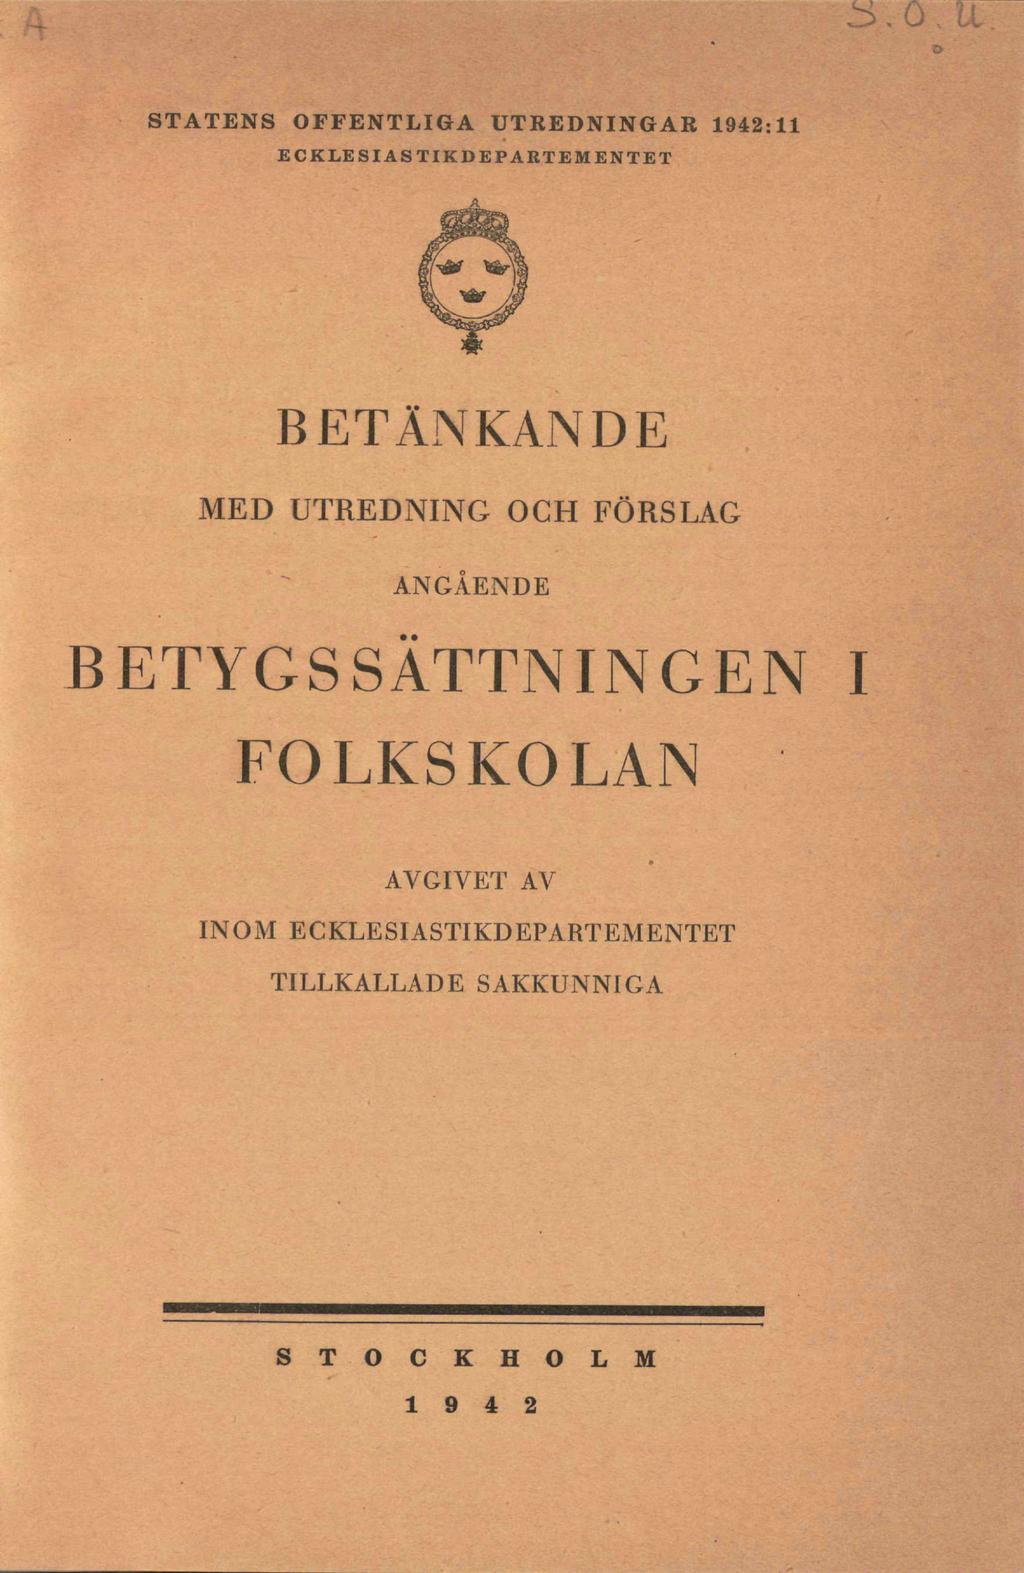 Tradition Viktigt grunddokument: SOU 1942:11 Betänkande om betygssättningen i folkskolan (Frits Wigforss).